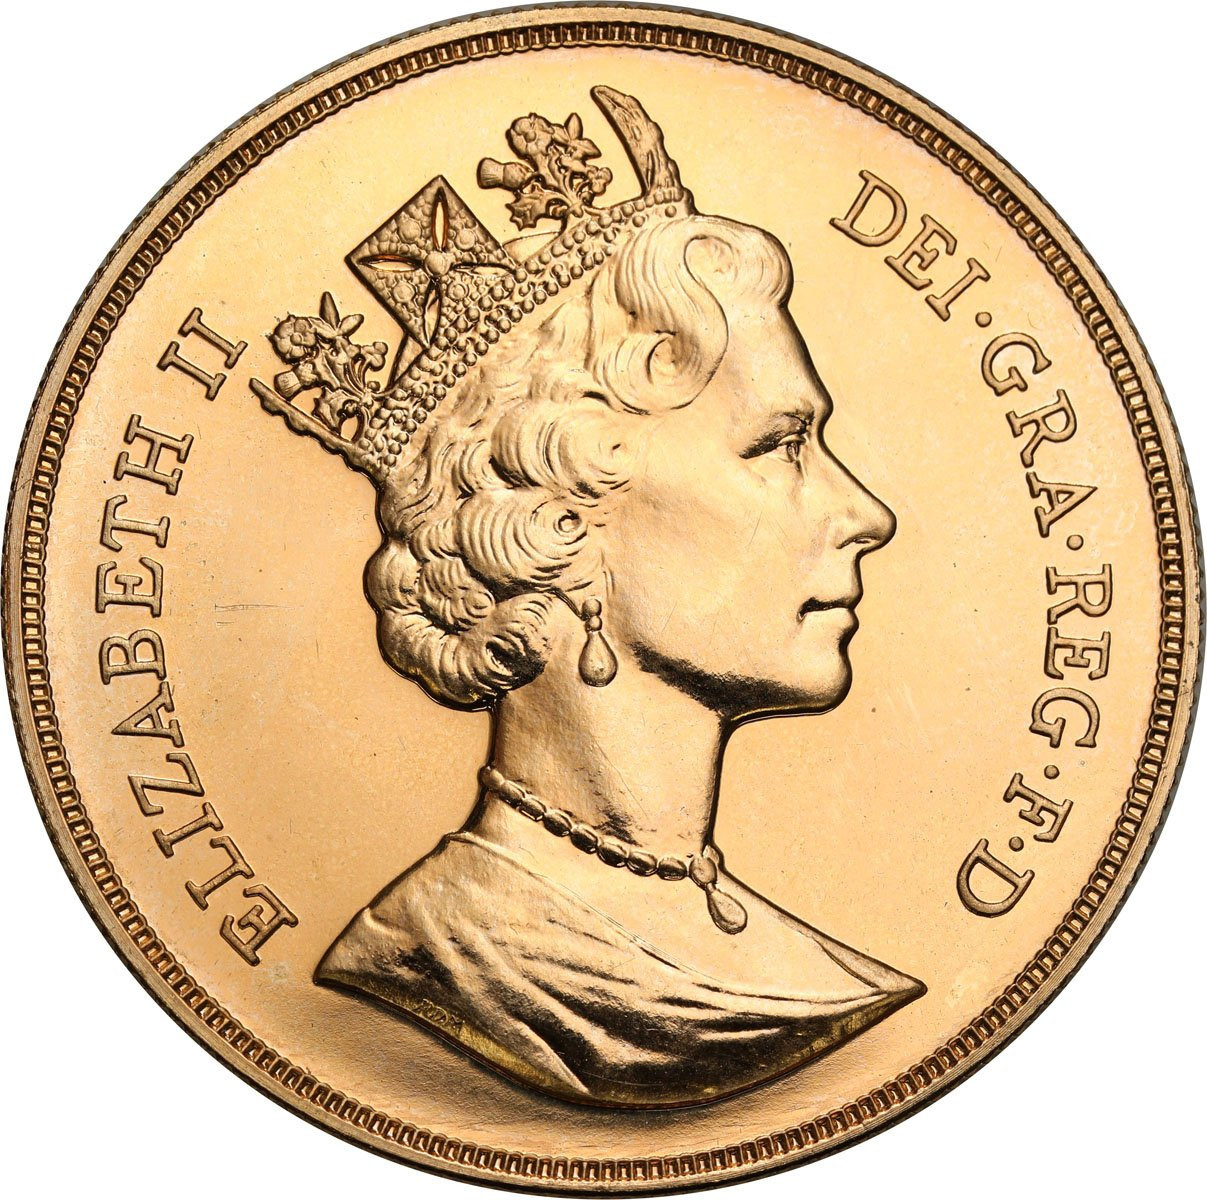 Wielka Brytania. Elżbieta II 5 funtów 1987 - PIĘKNE